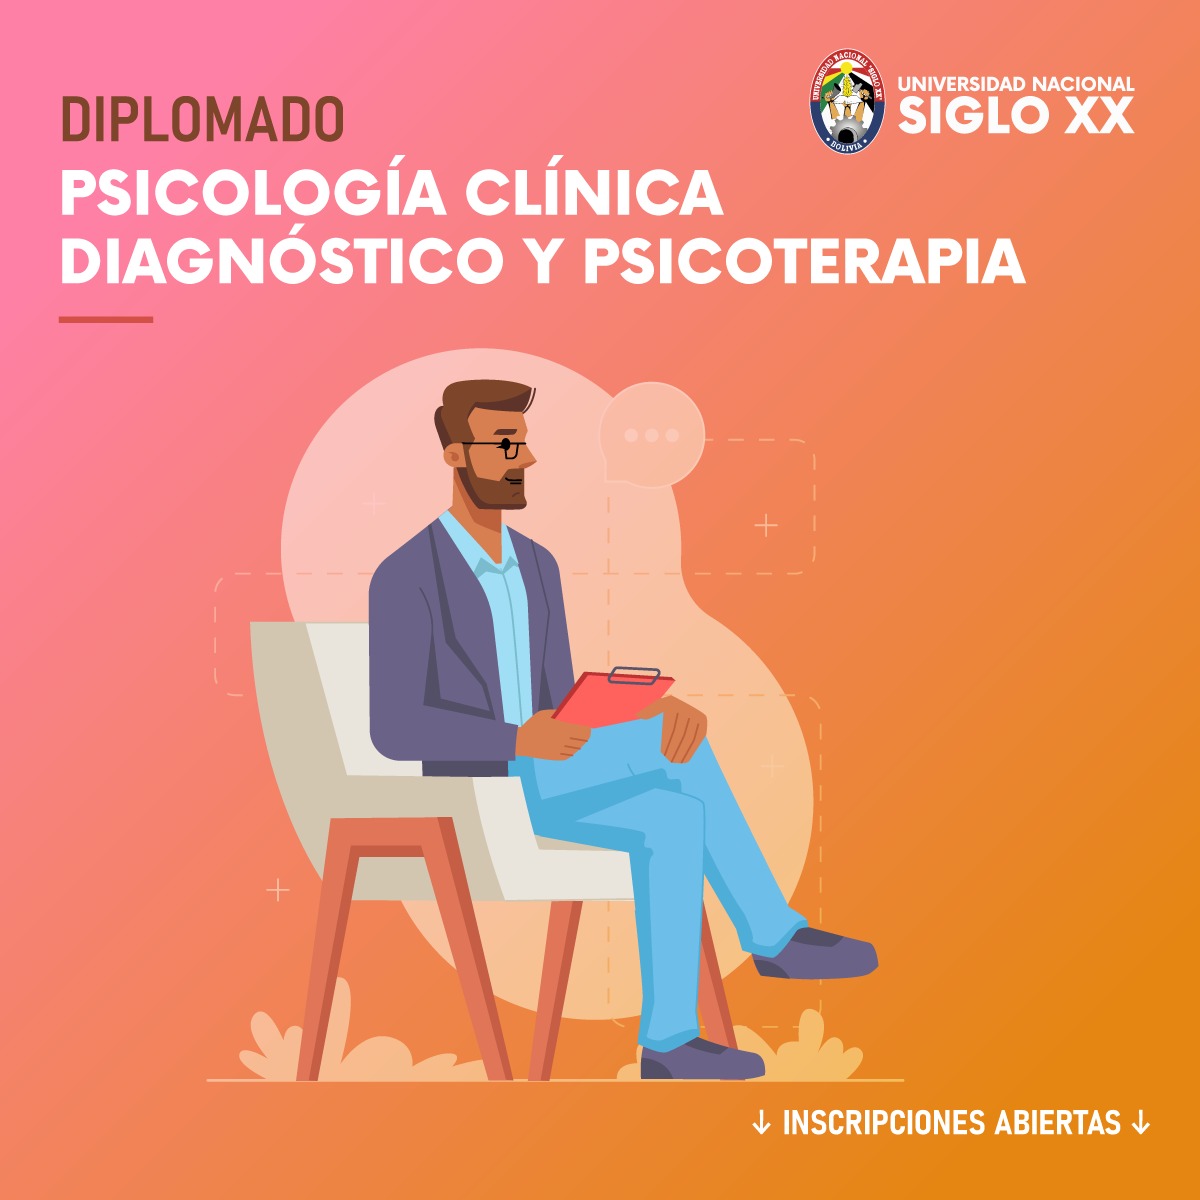 Diplomado DIPLOMADO DE PSICOLOGÍA CLÍNICA DIAGNÓSTICO Y PSICOTERAPIA